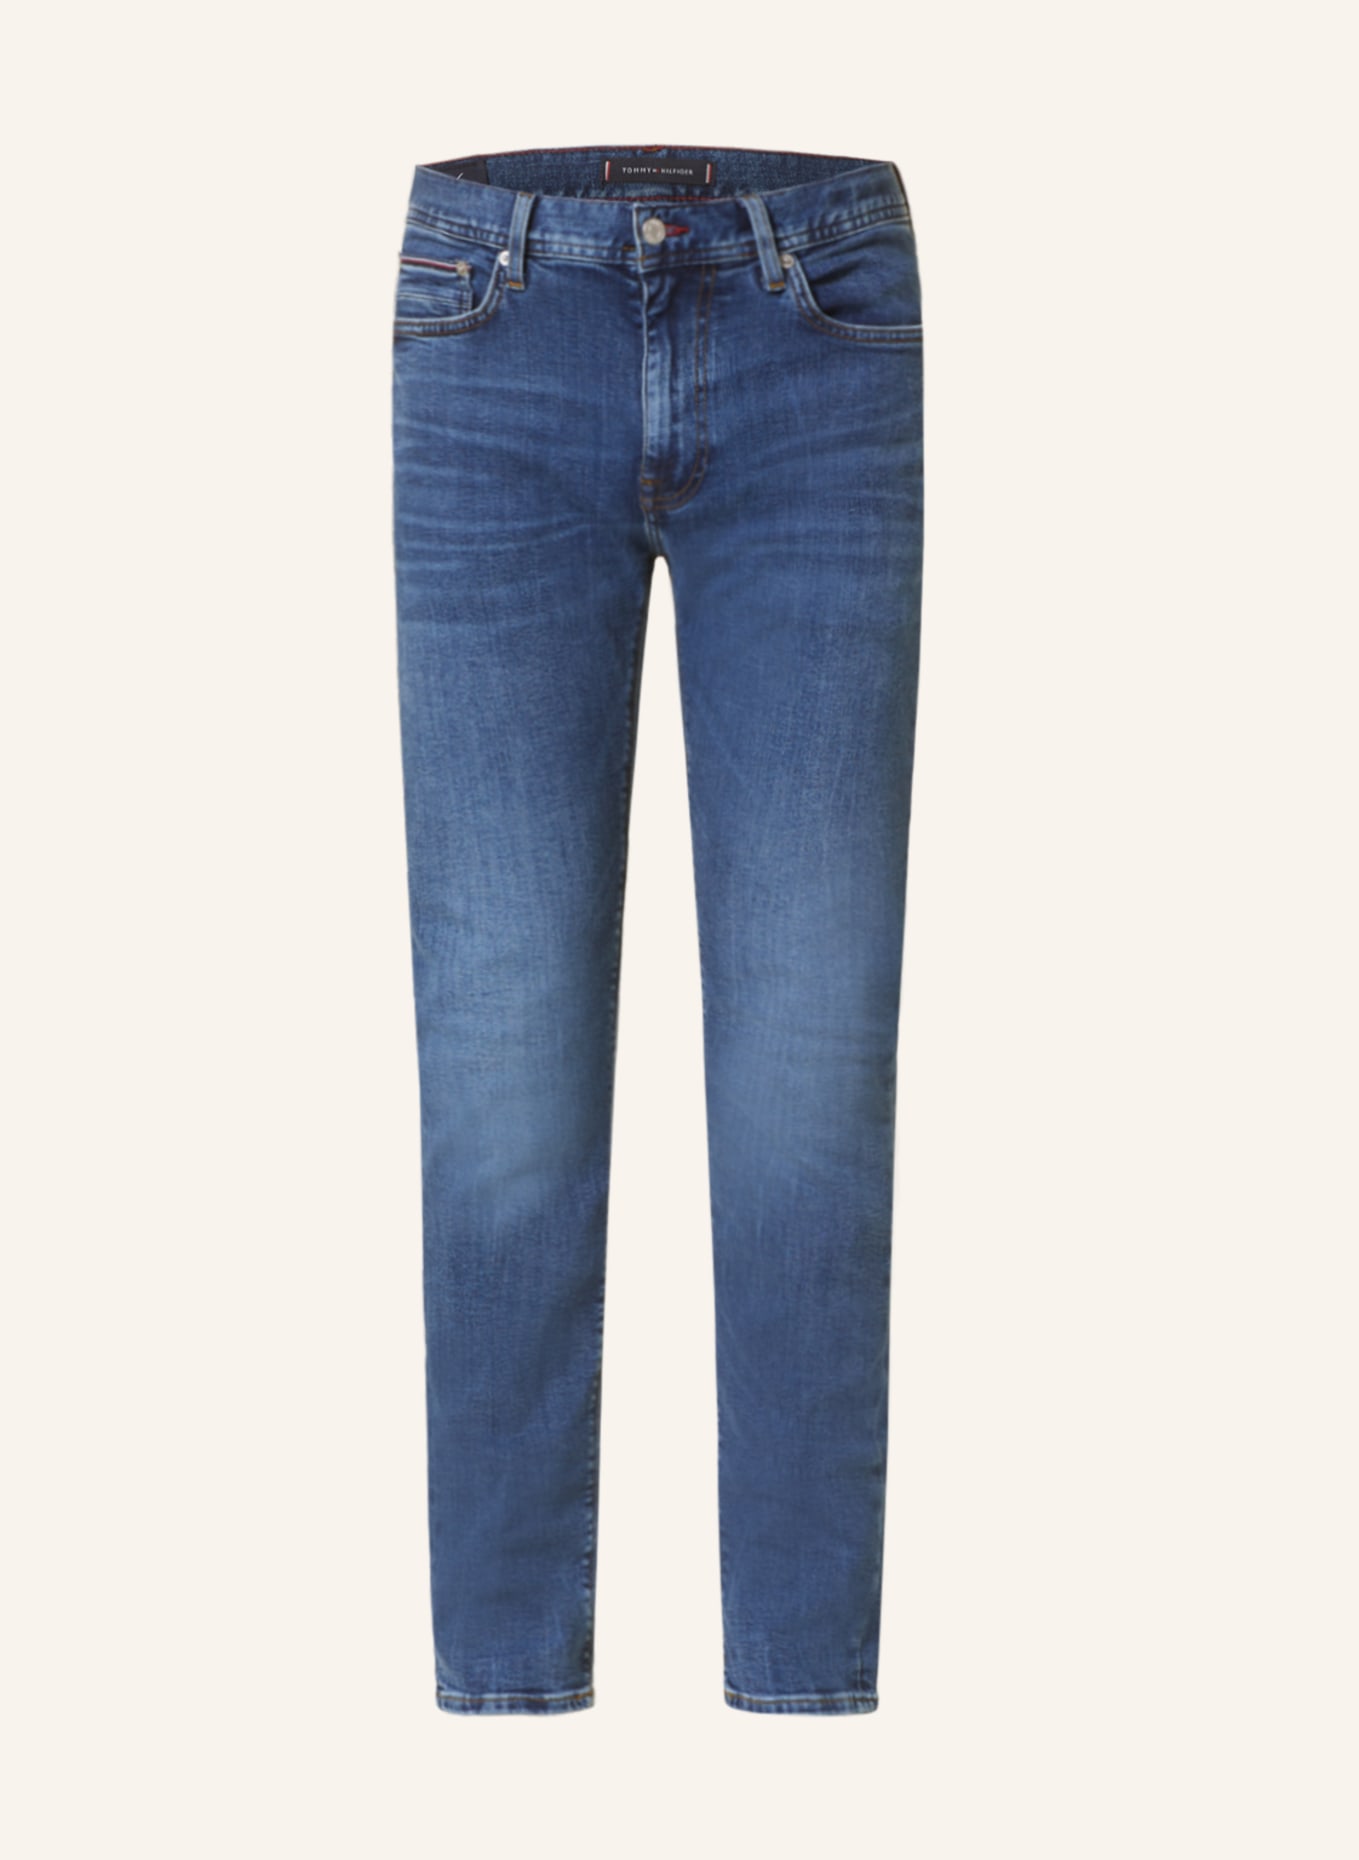 TOMMY HILFIGER Jeans BLEECKER Slim Fit, Farbe: 1C4 Oregon Indigo (Bild 1)